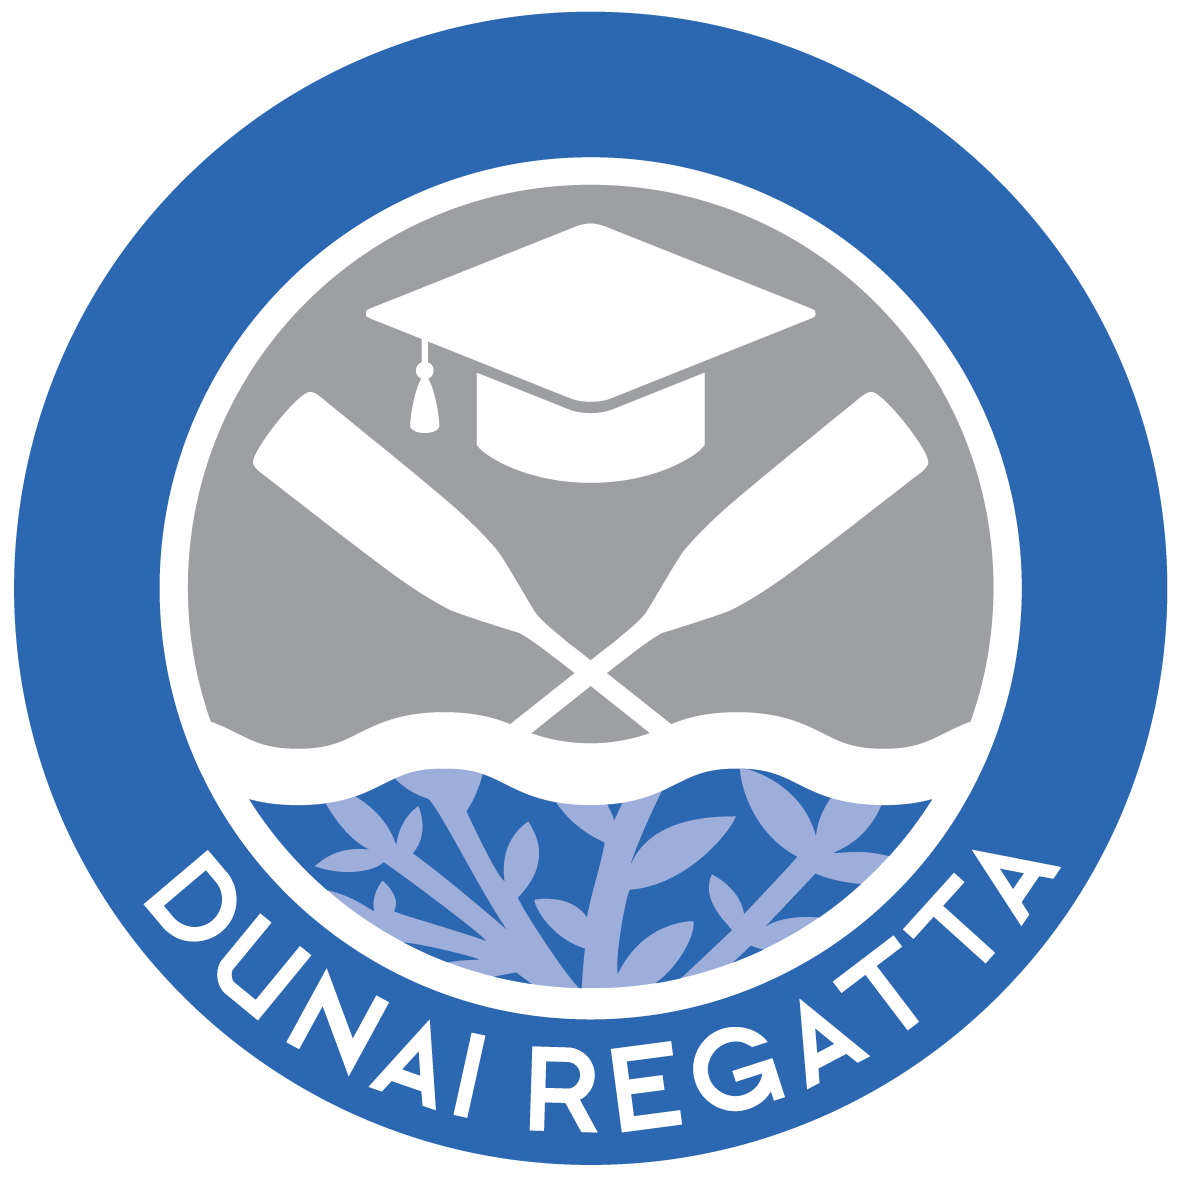 regatta_logo_1.png